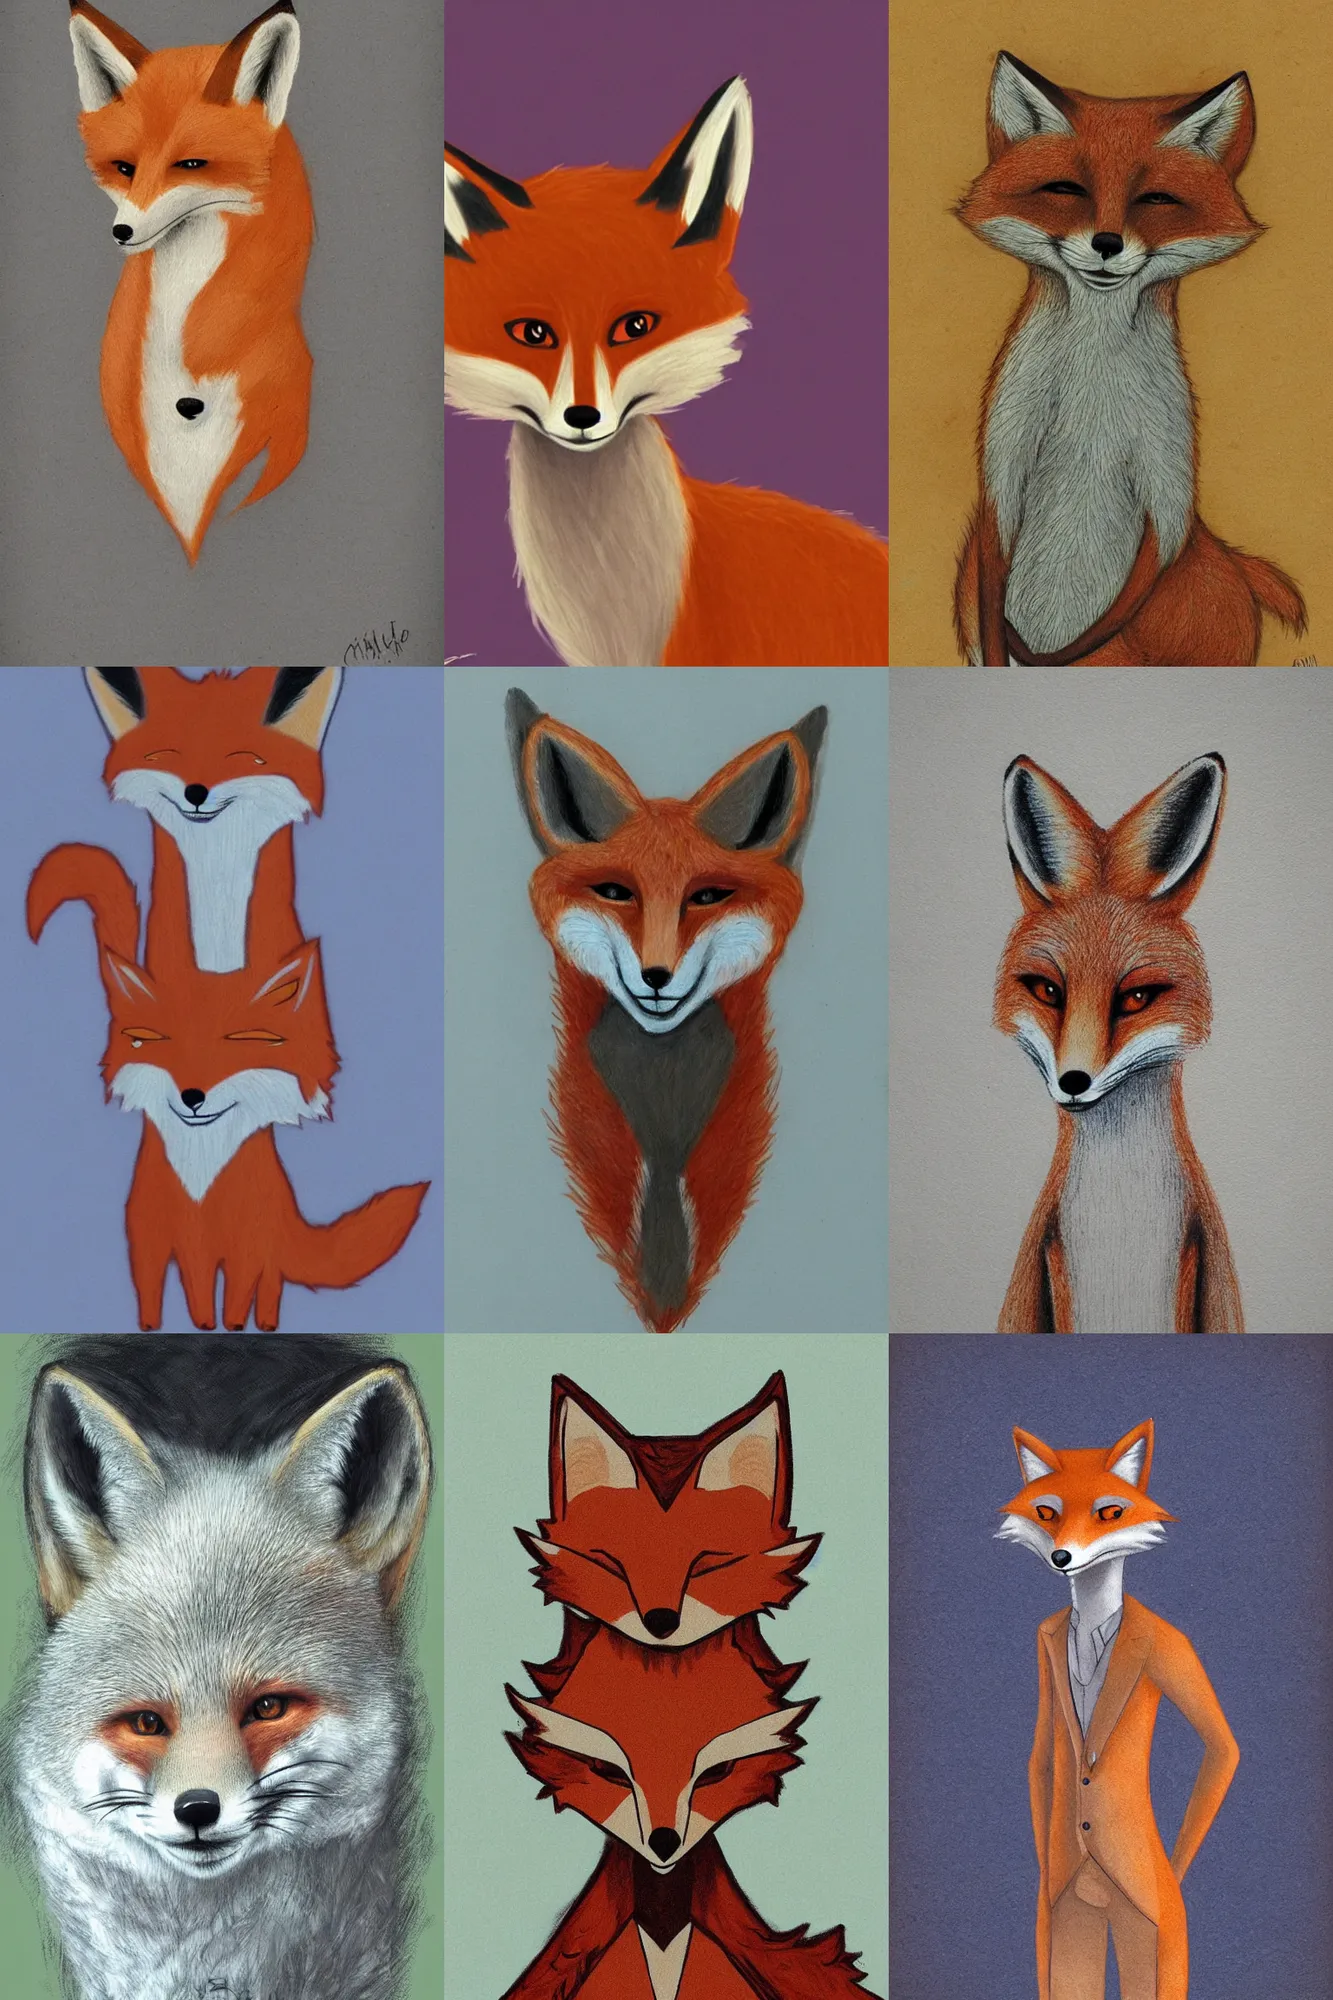 Prompt: anthropomorphic fox by random artist